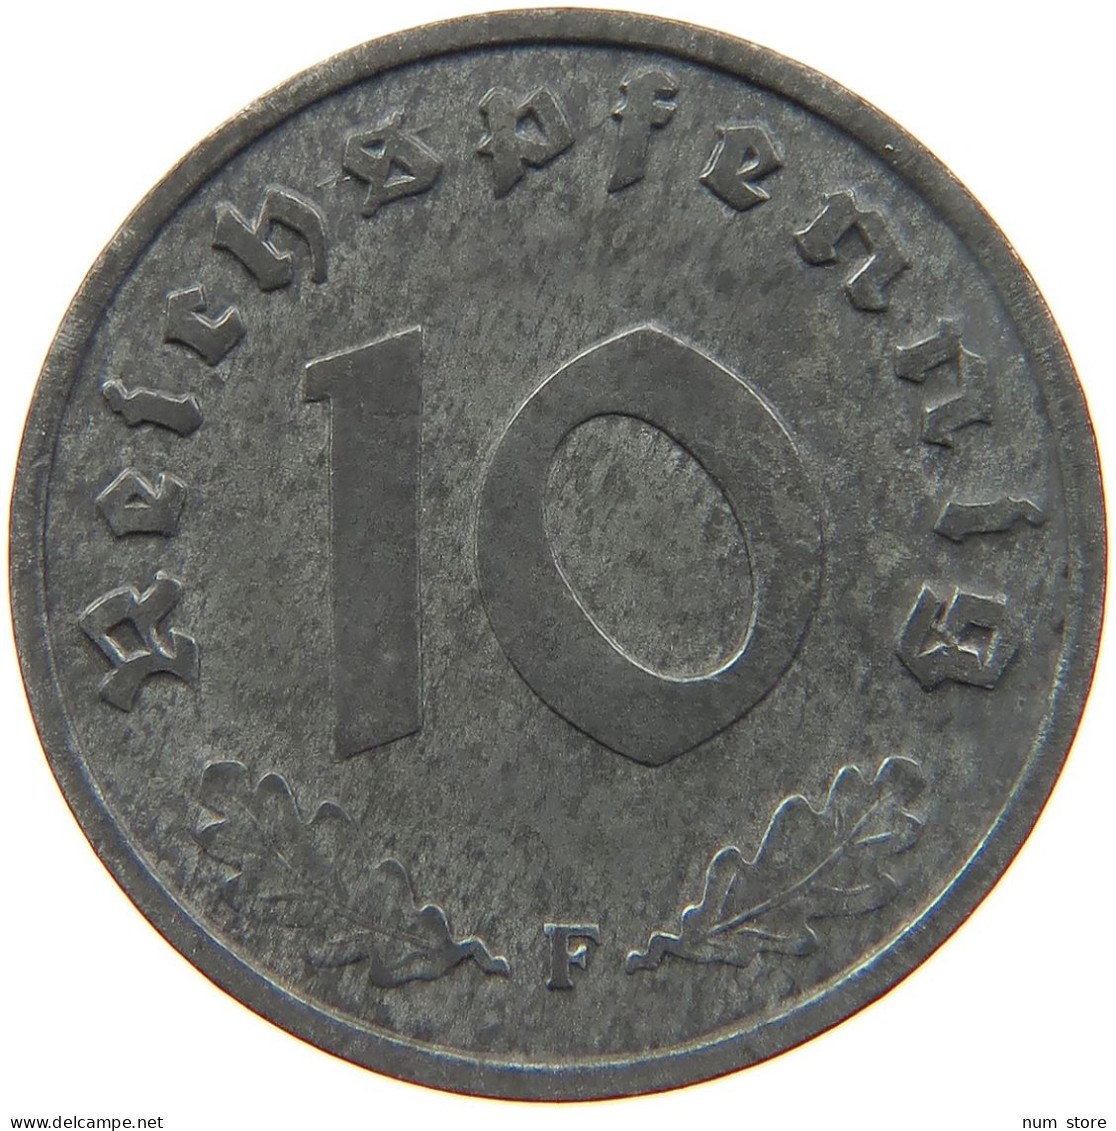 GERMANY 10 REICHSPFENNIG 1940 B #s095 0057 - 10 Reichspfennig